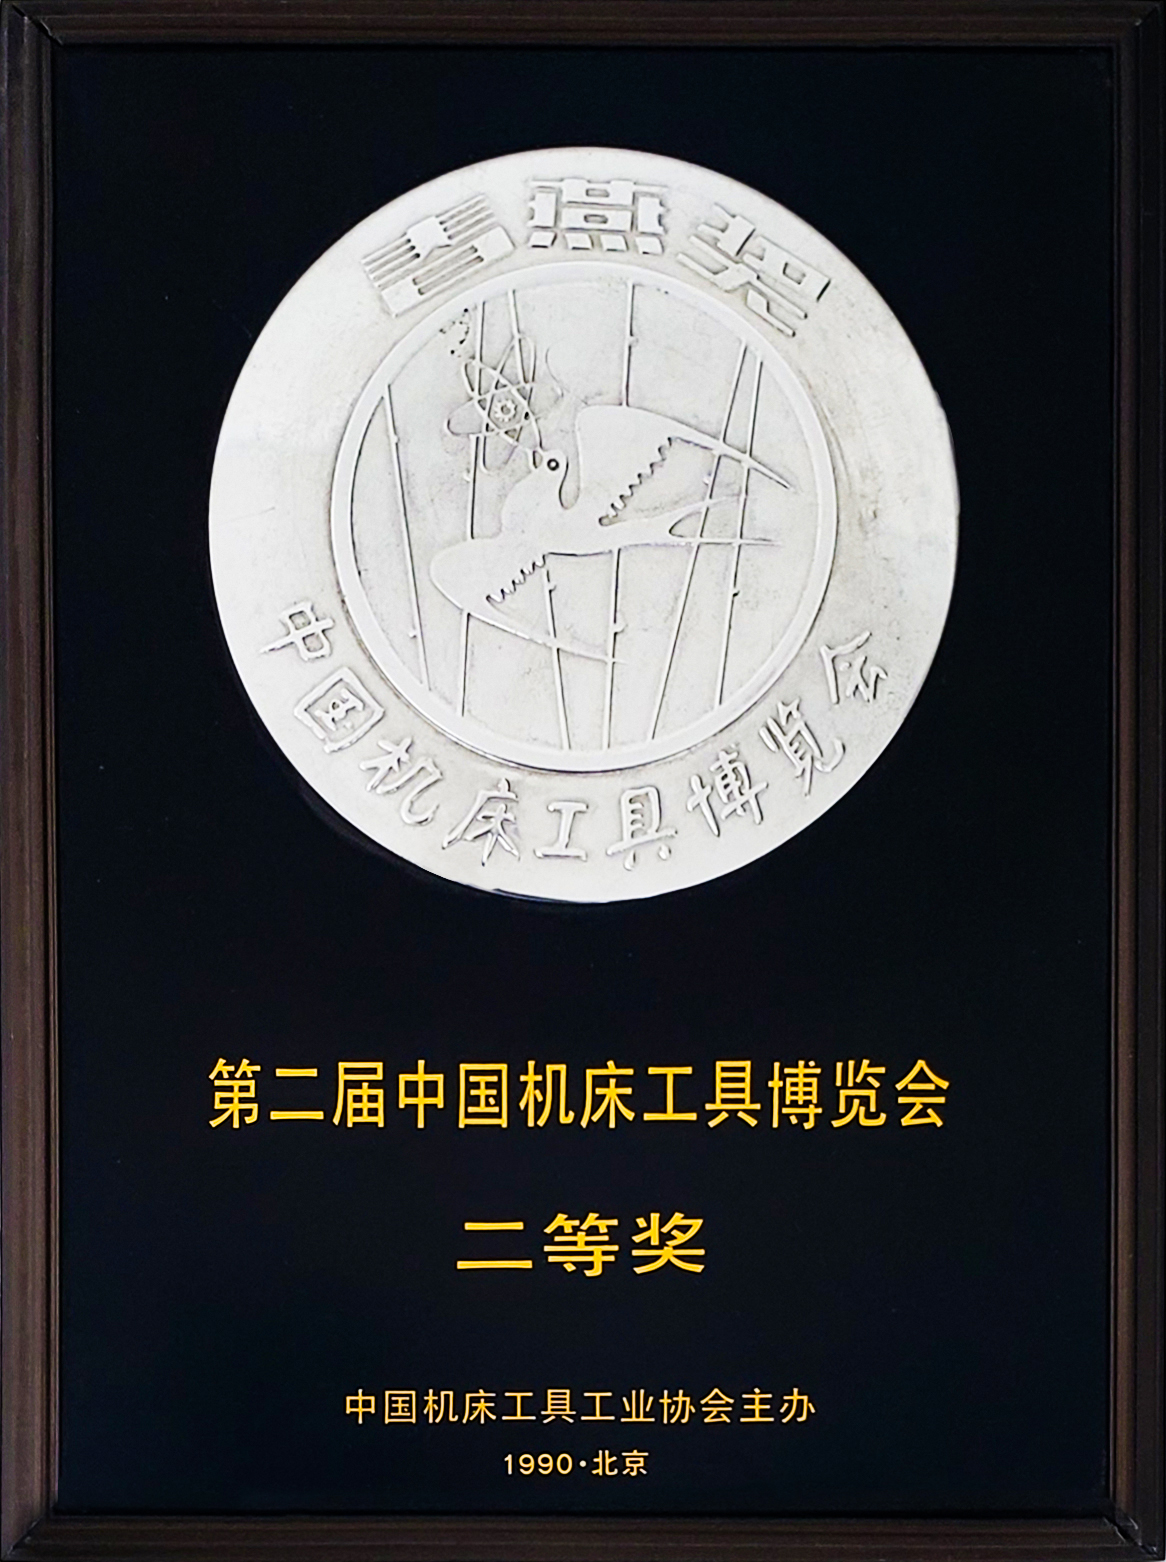 1990机床工具工业协会-春燕奖